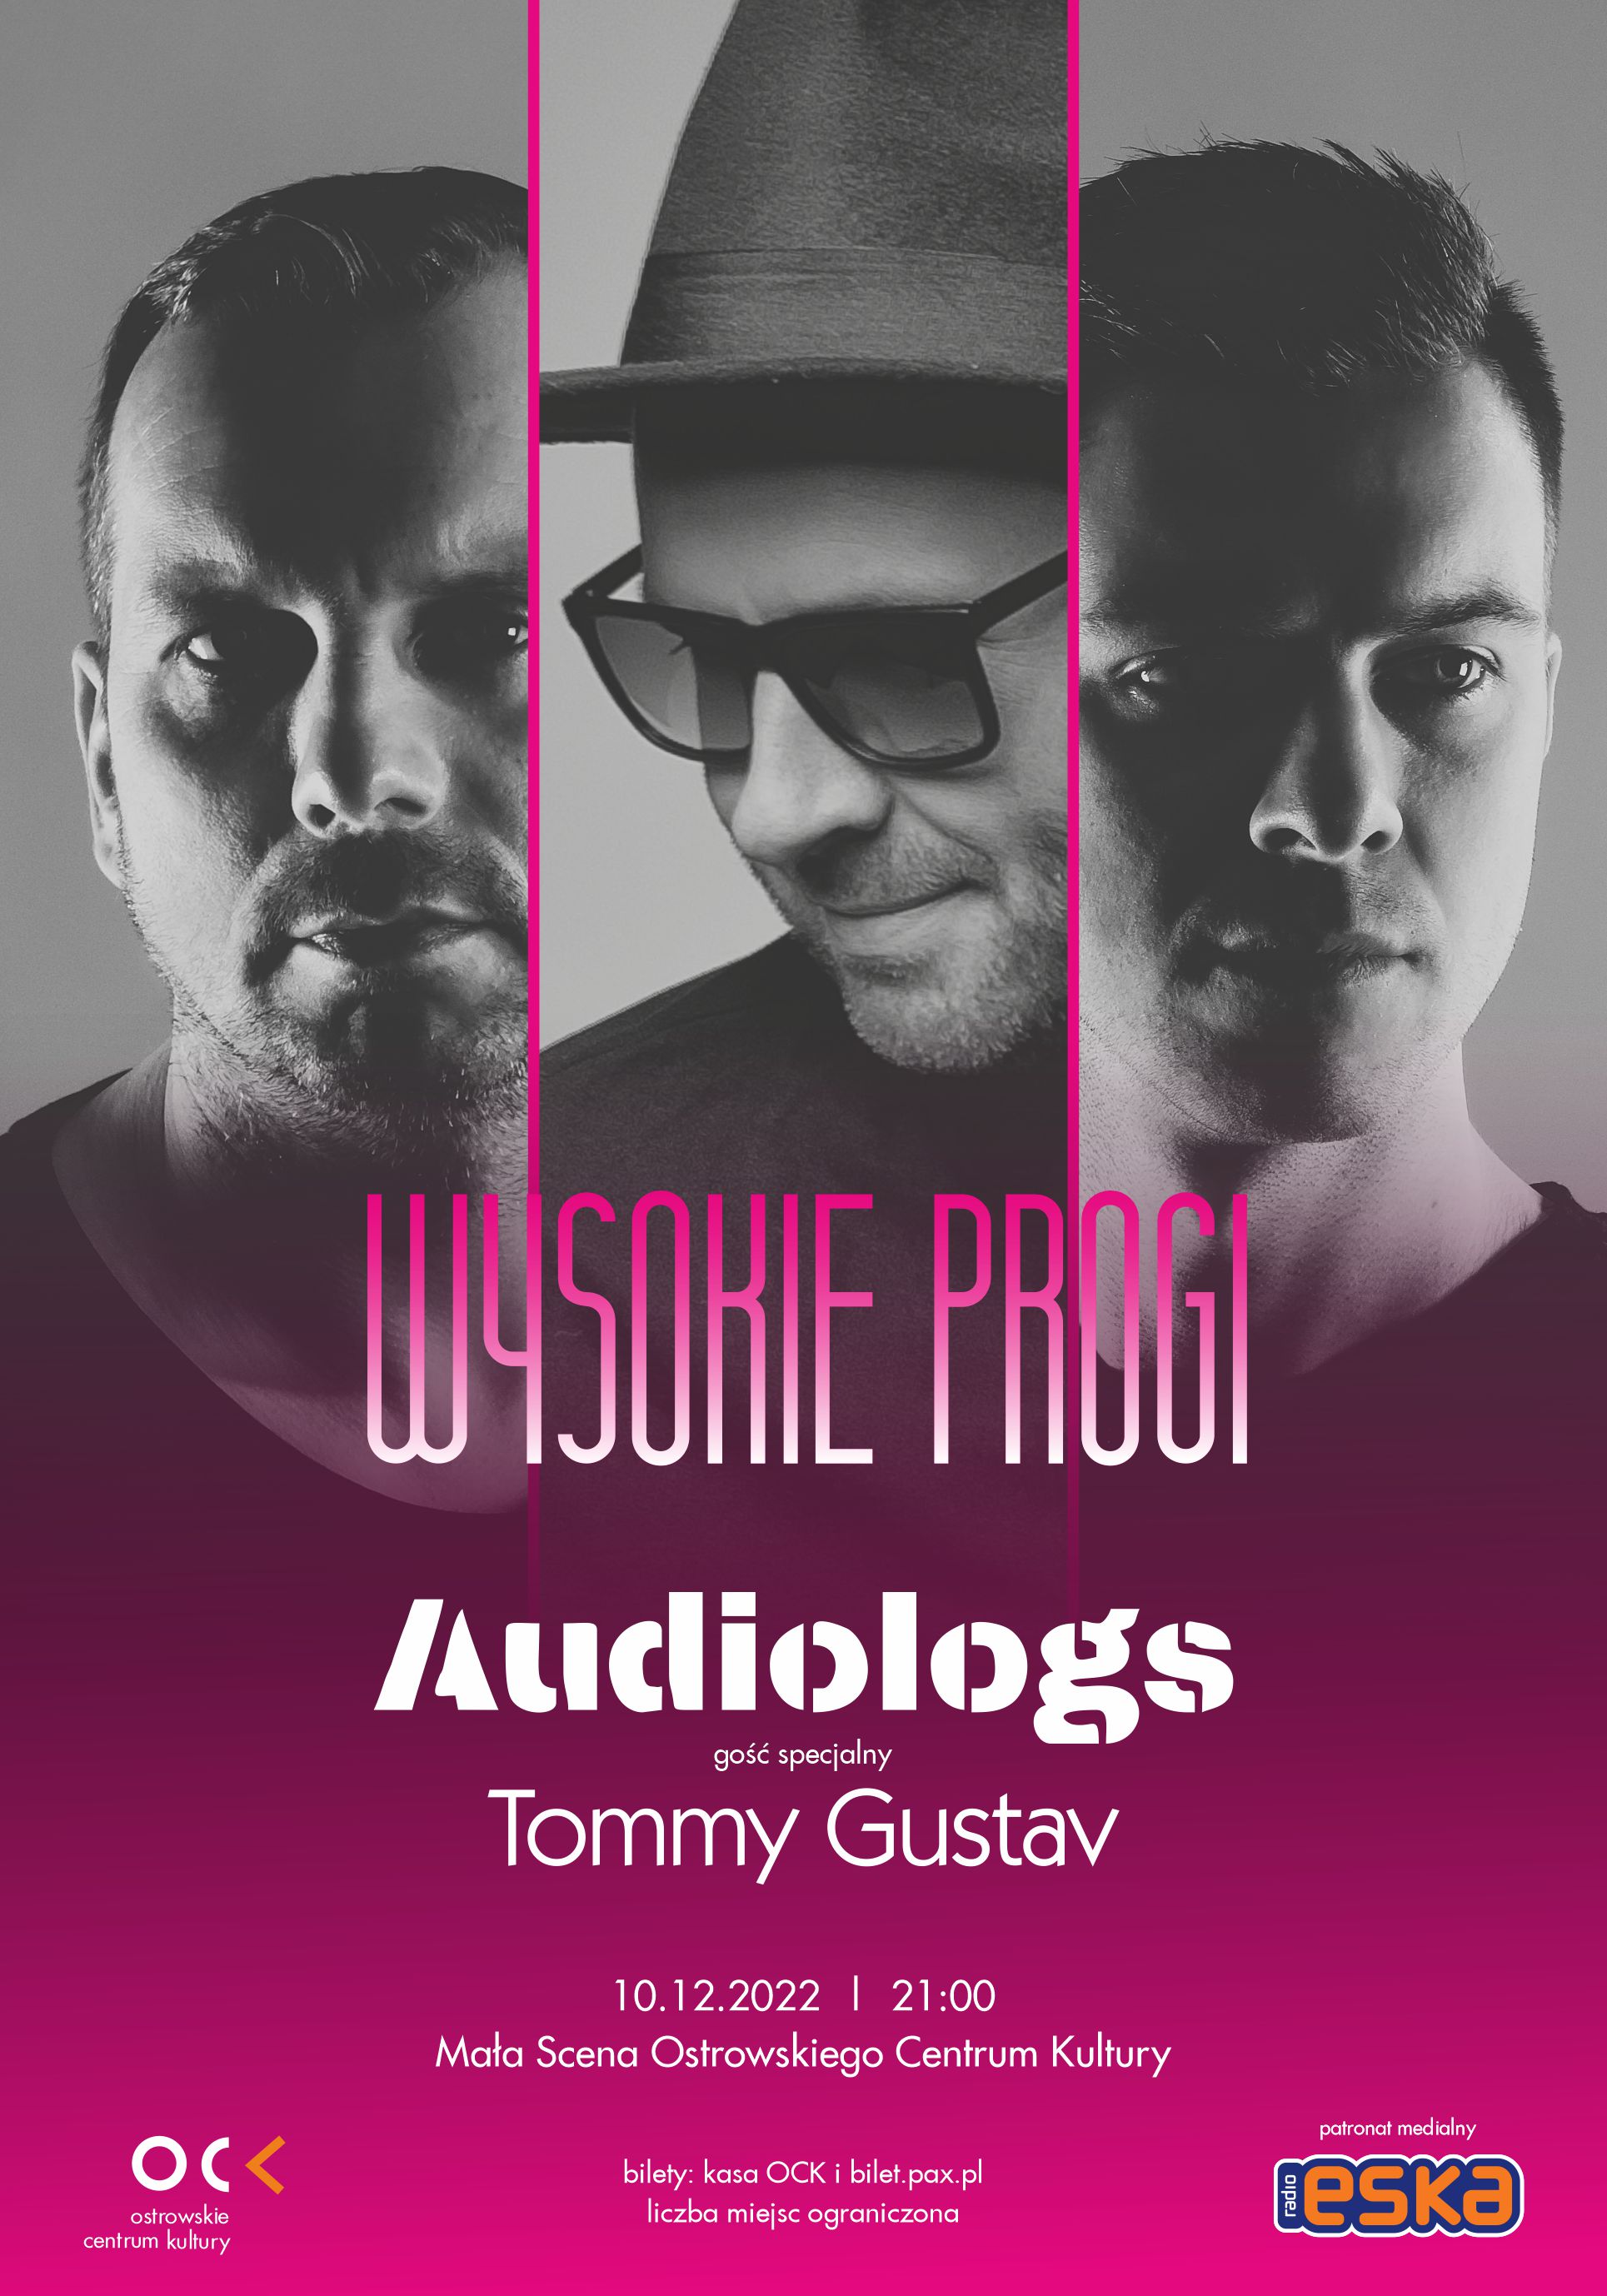 Audiologs / gość specjalny Tommy Gustav